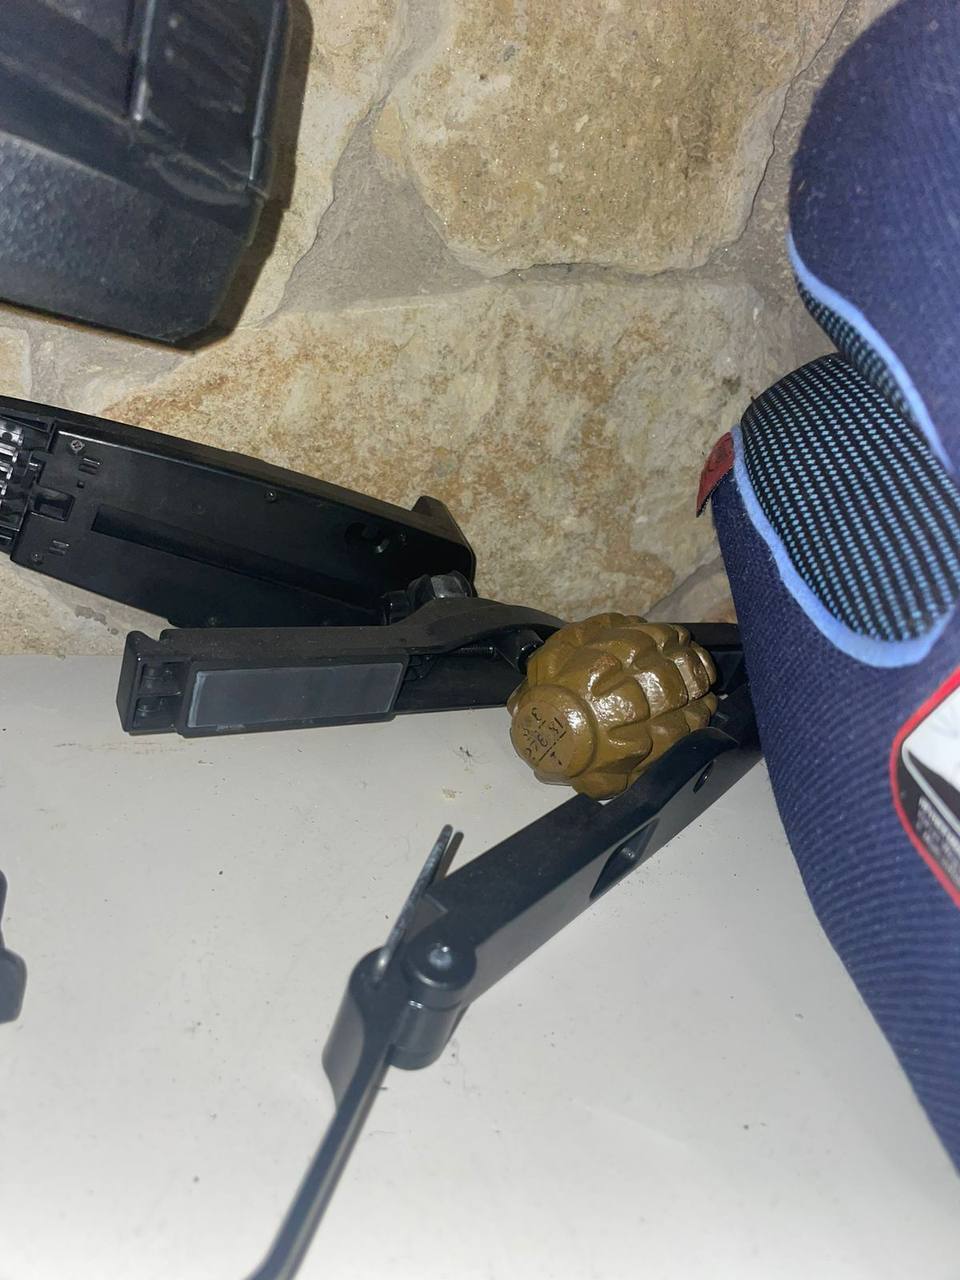 Житель Бучи обнаружил в гараже растяжку: полиция обезвредила опасный предмет. Фото